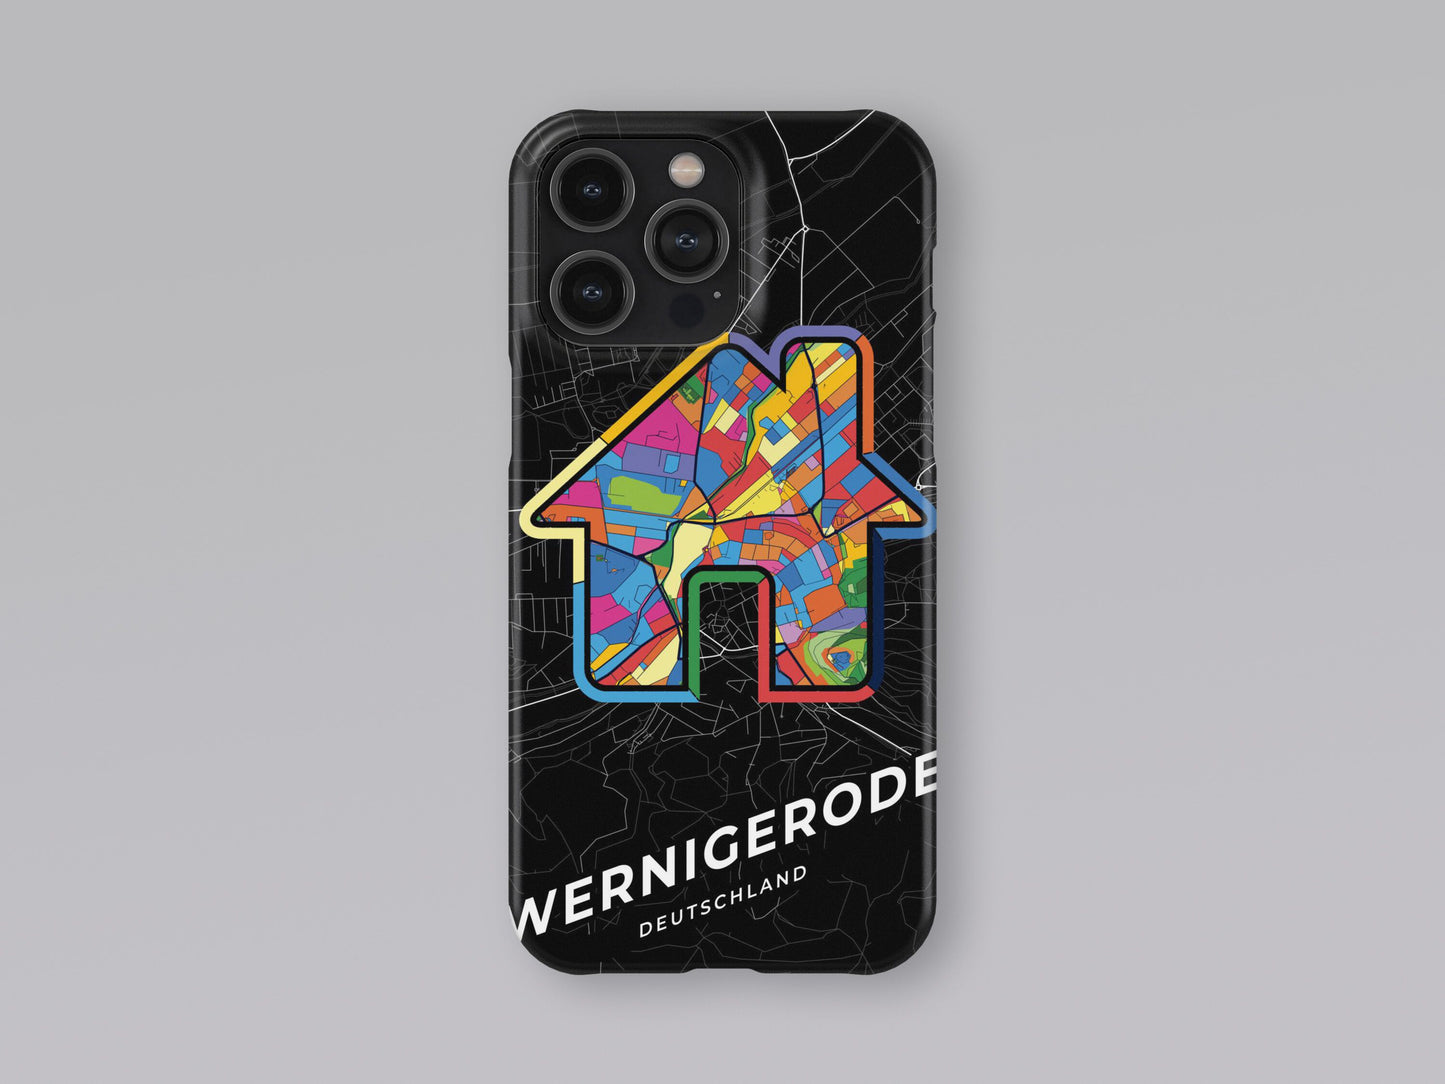 Wernigerode Deutschland slim phone case with colorful icon 3